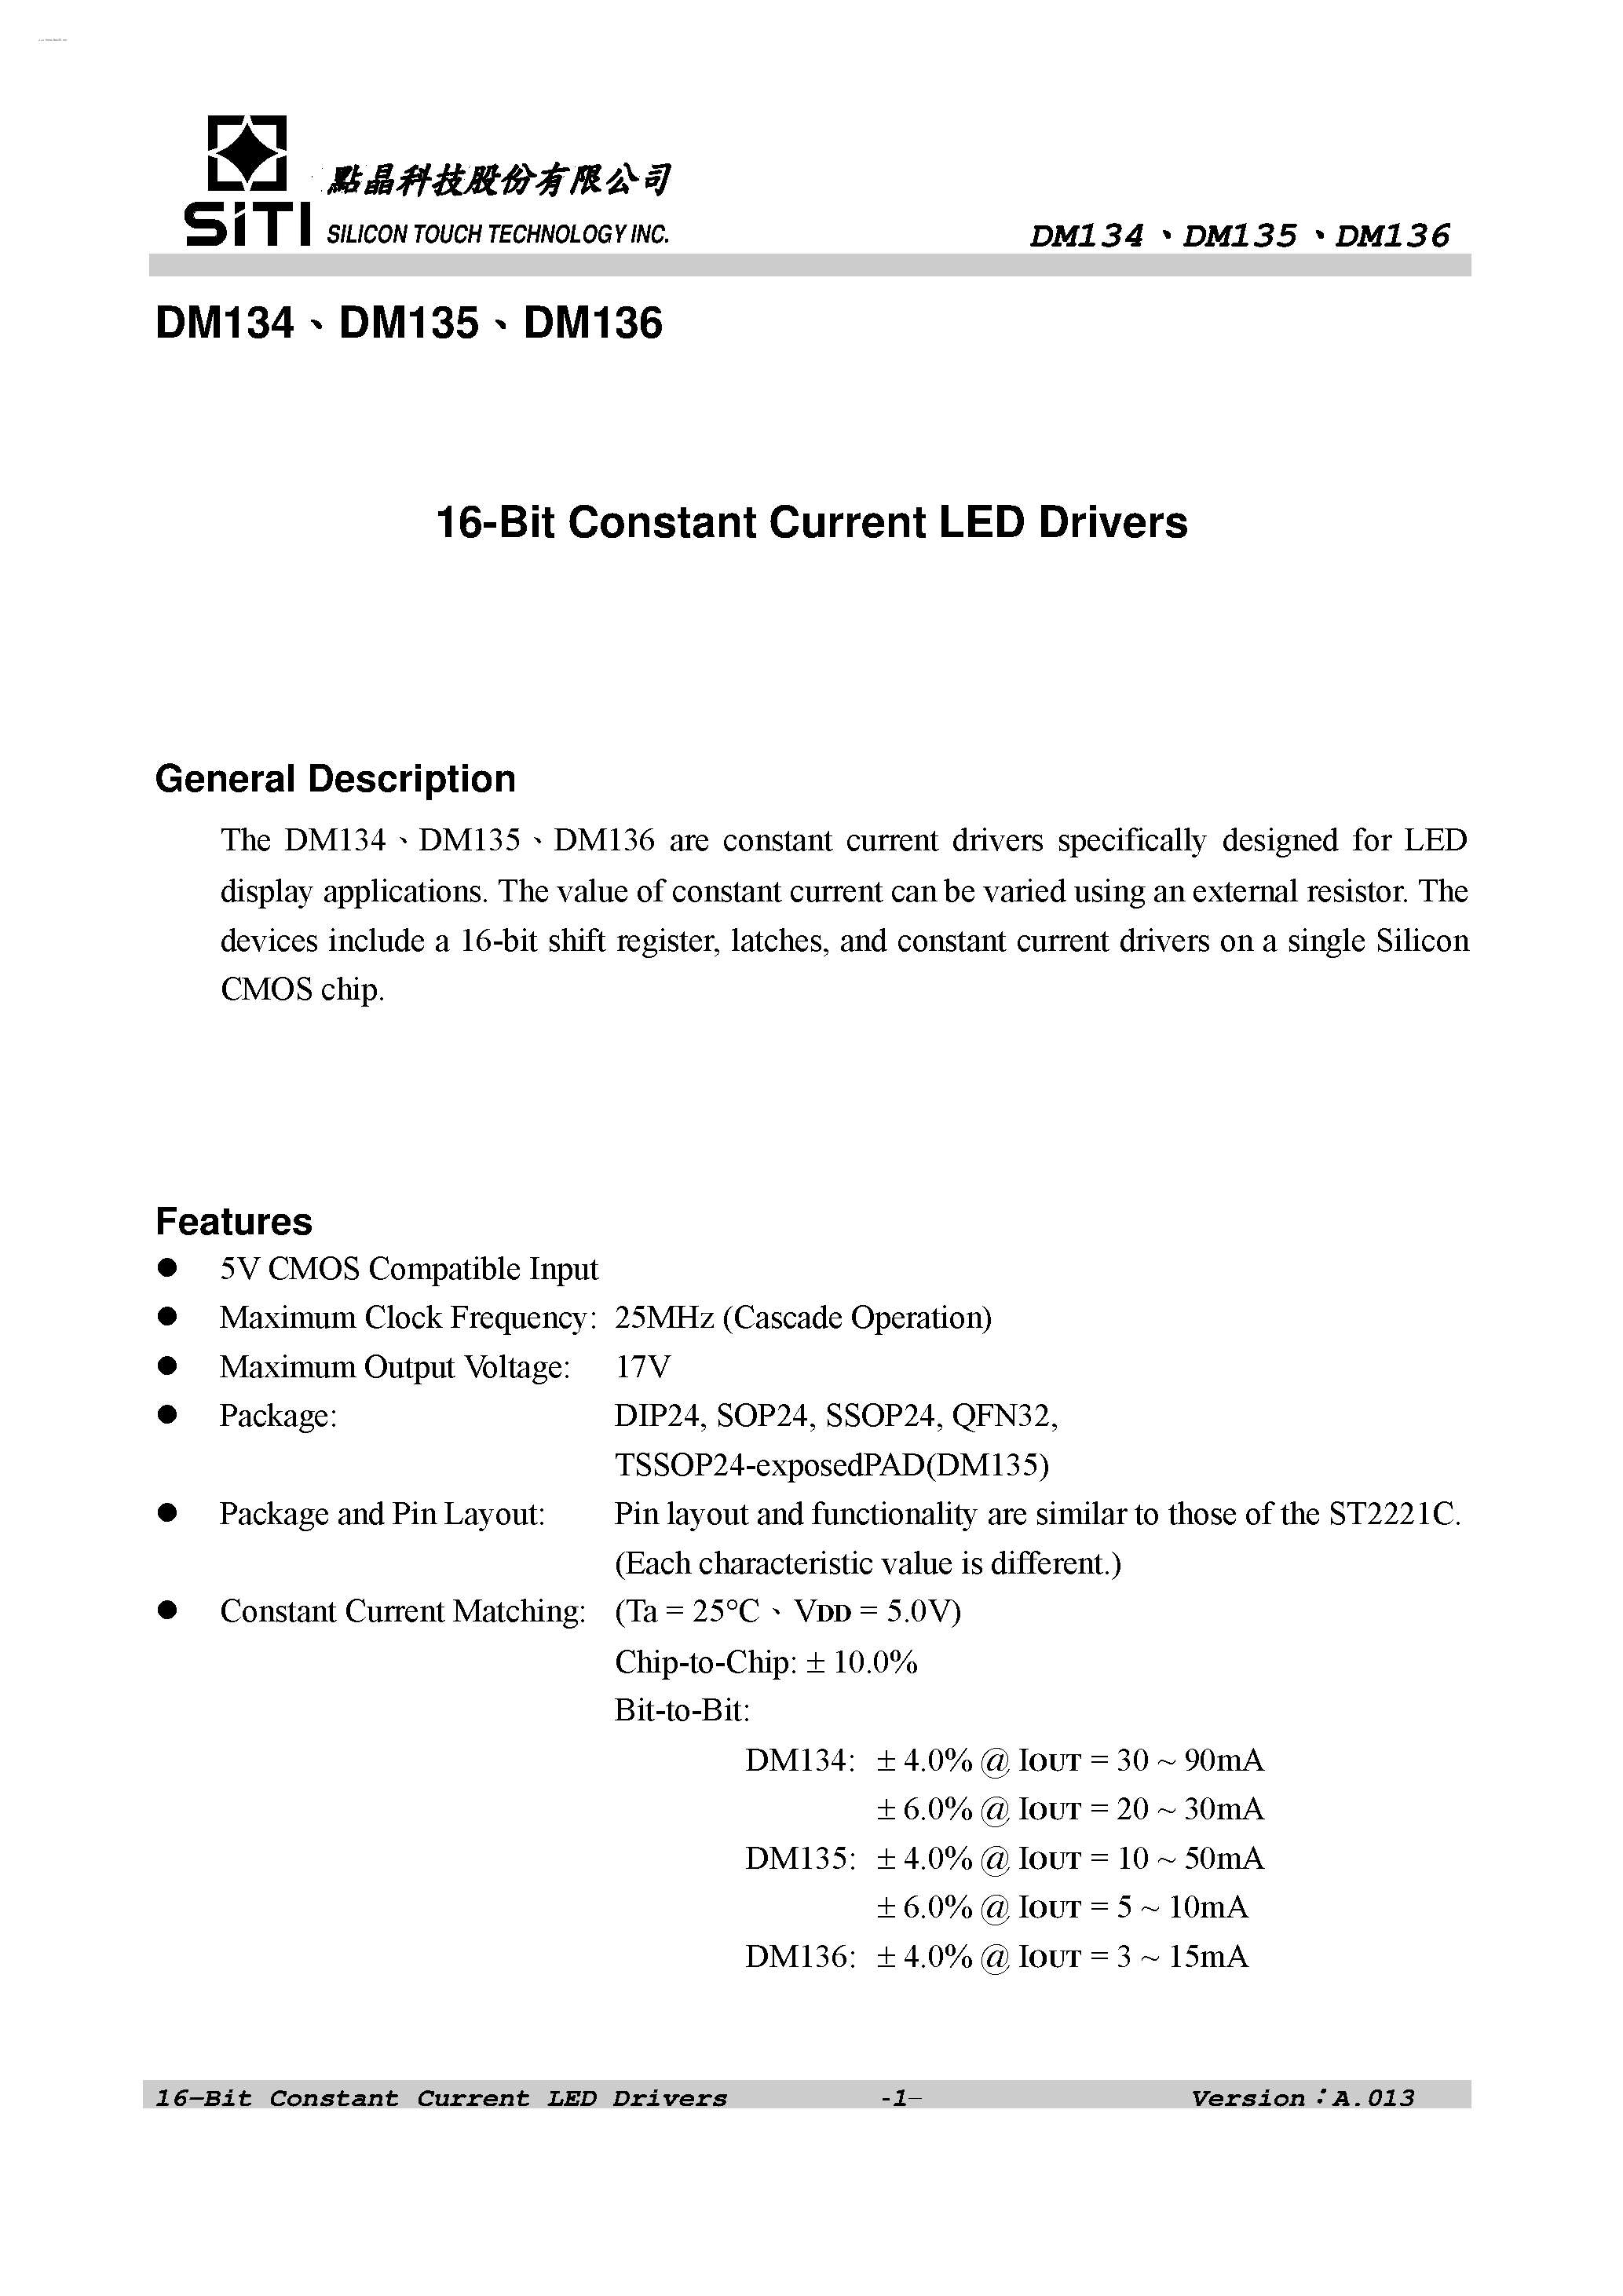 Datasheet DM134 - (DM134 - DM136) 16-Bit Constant Current LED Drivers page 2